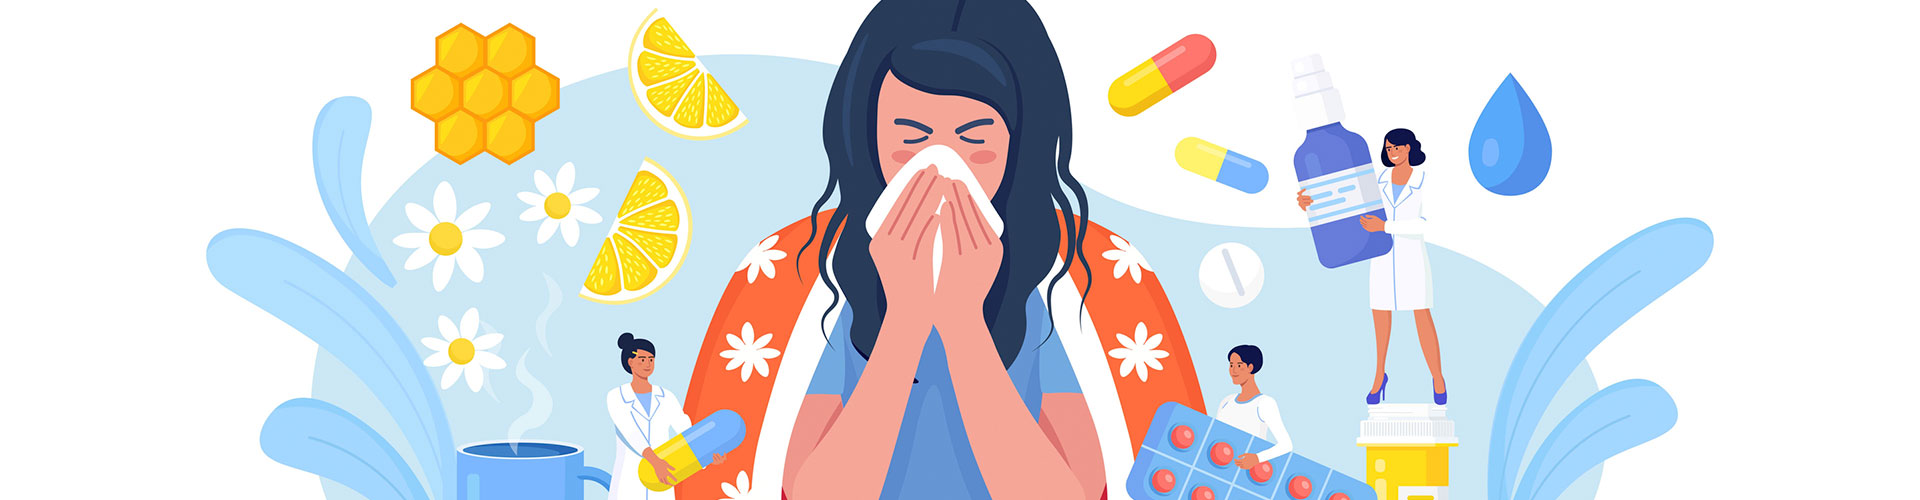 Abecé de la influenza y su prevención